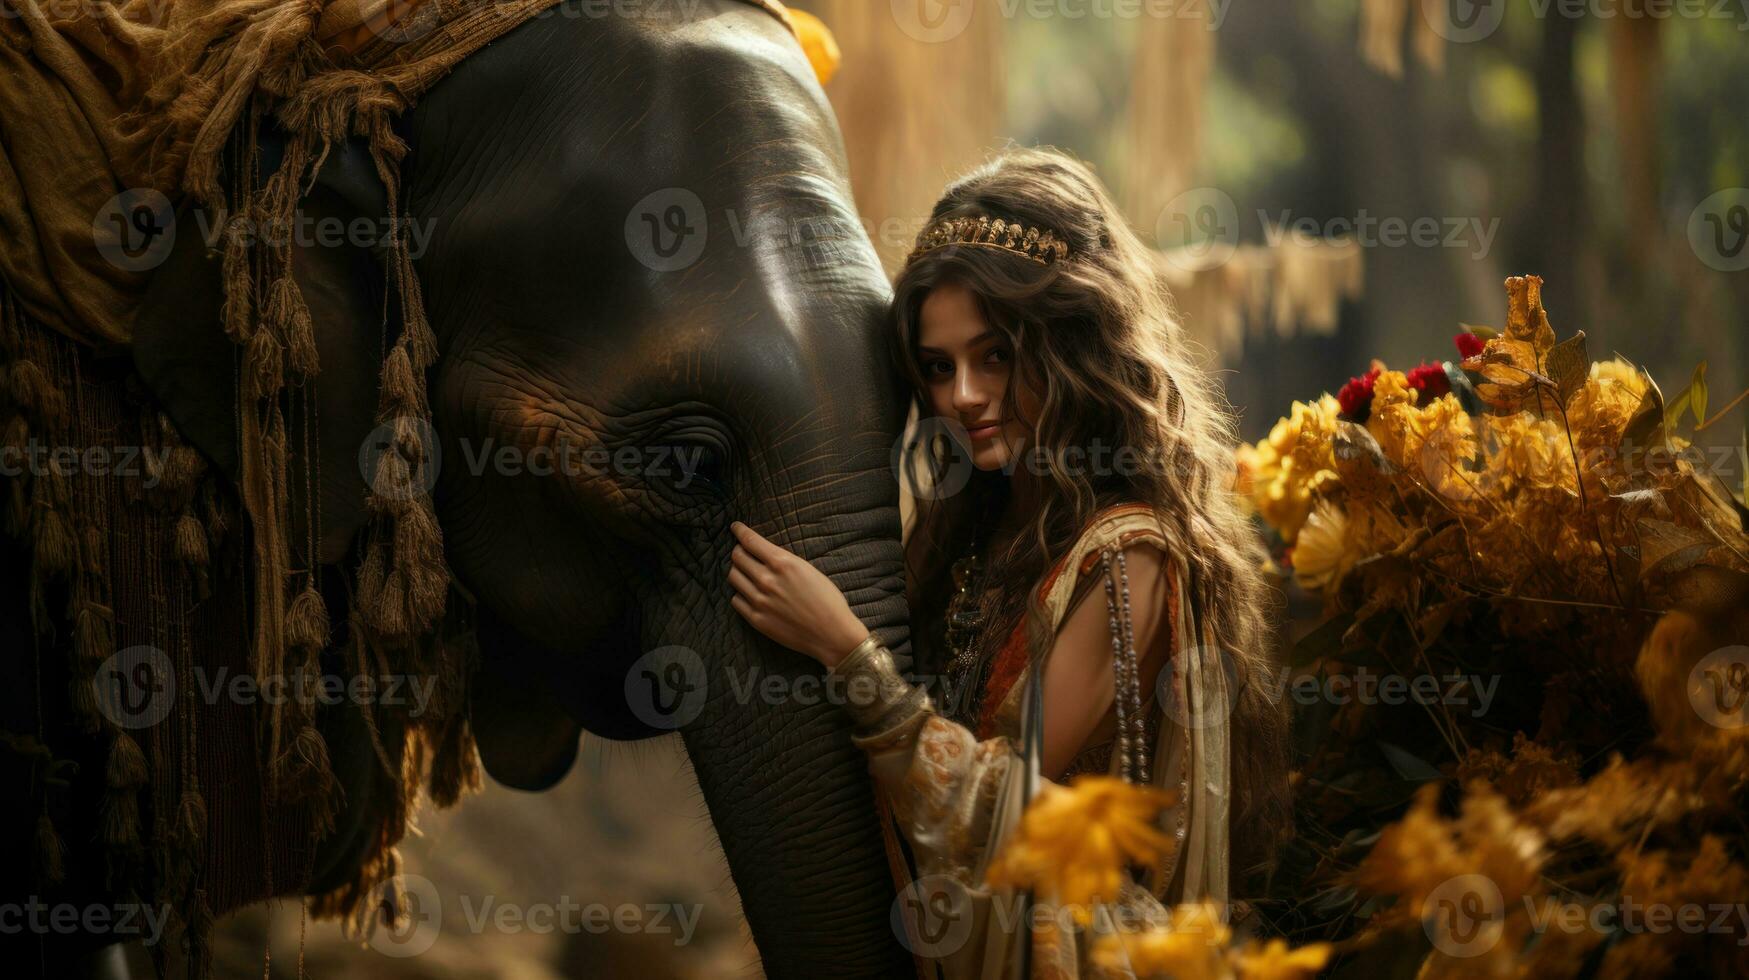 mooi Indisch vrouw en olifant in de Woud. boho stijl. foto